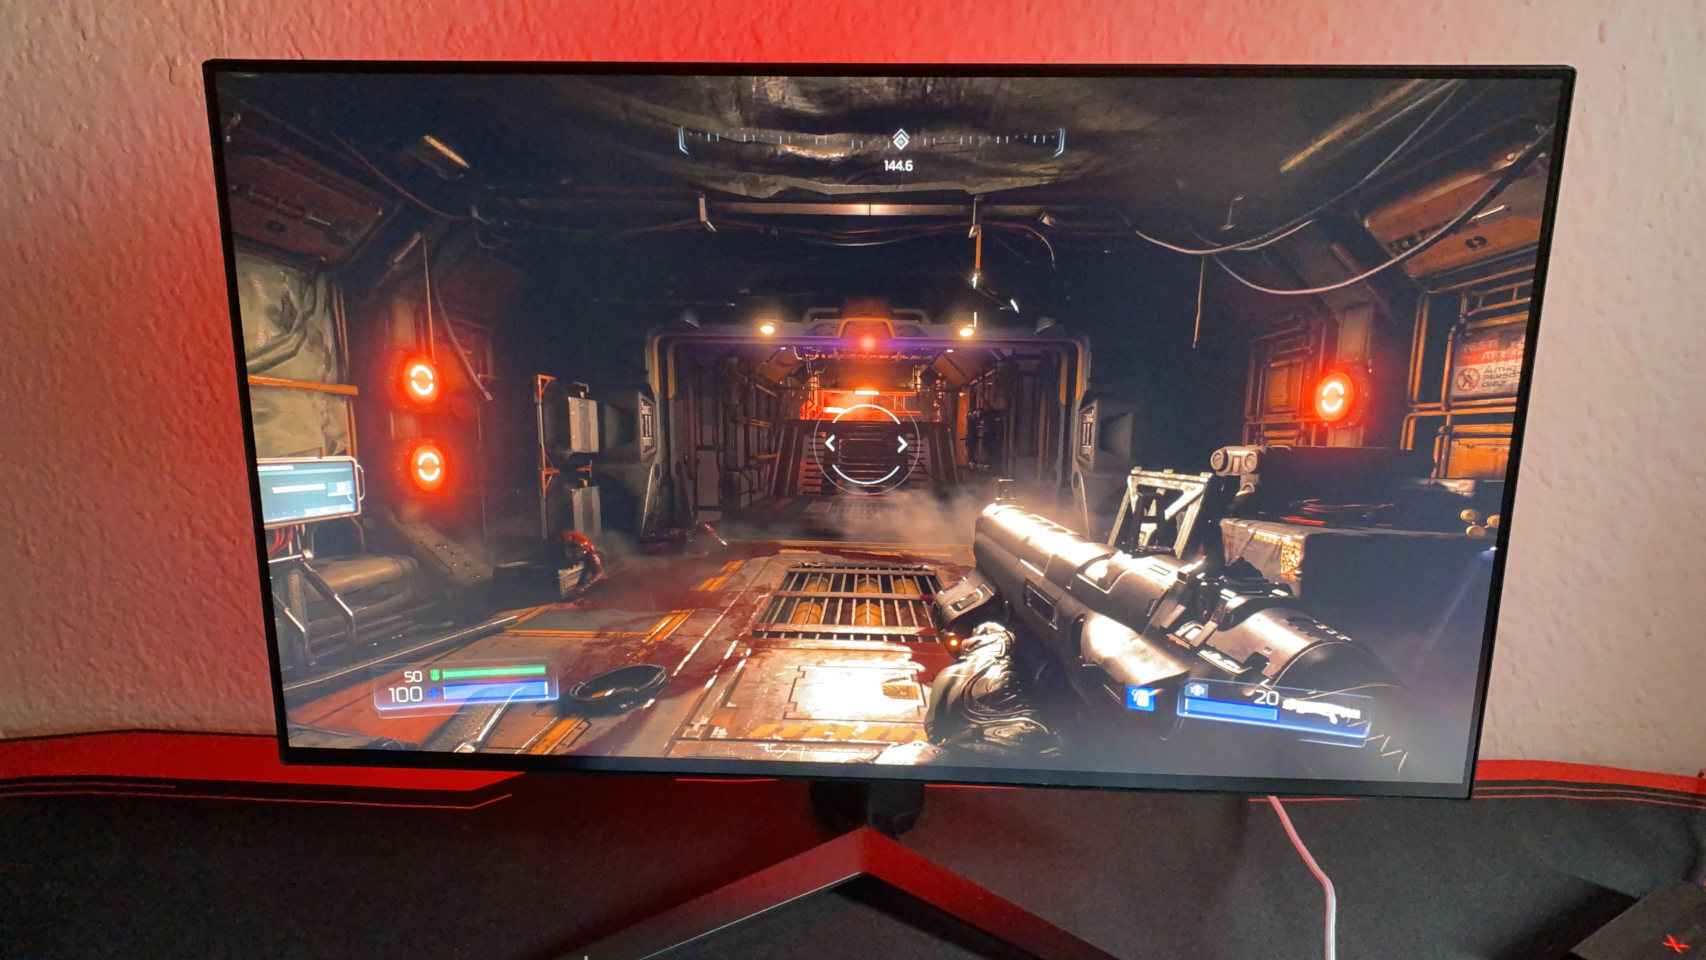 El nuevo monitor de LG es ideal para juegos rápidos de disparos